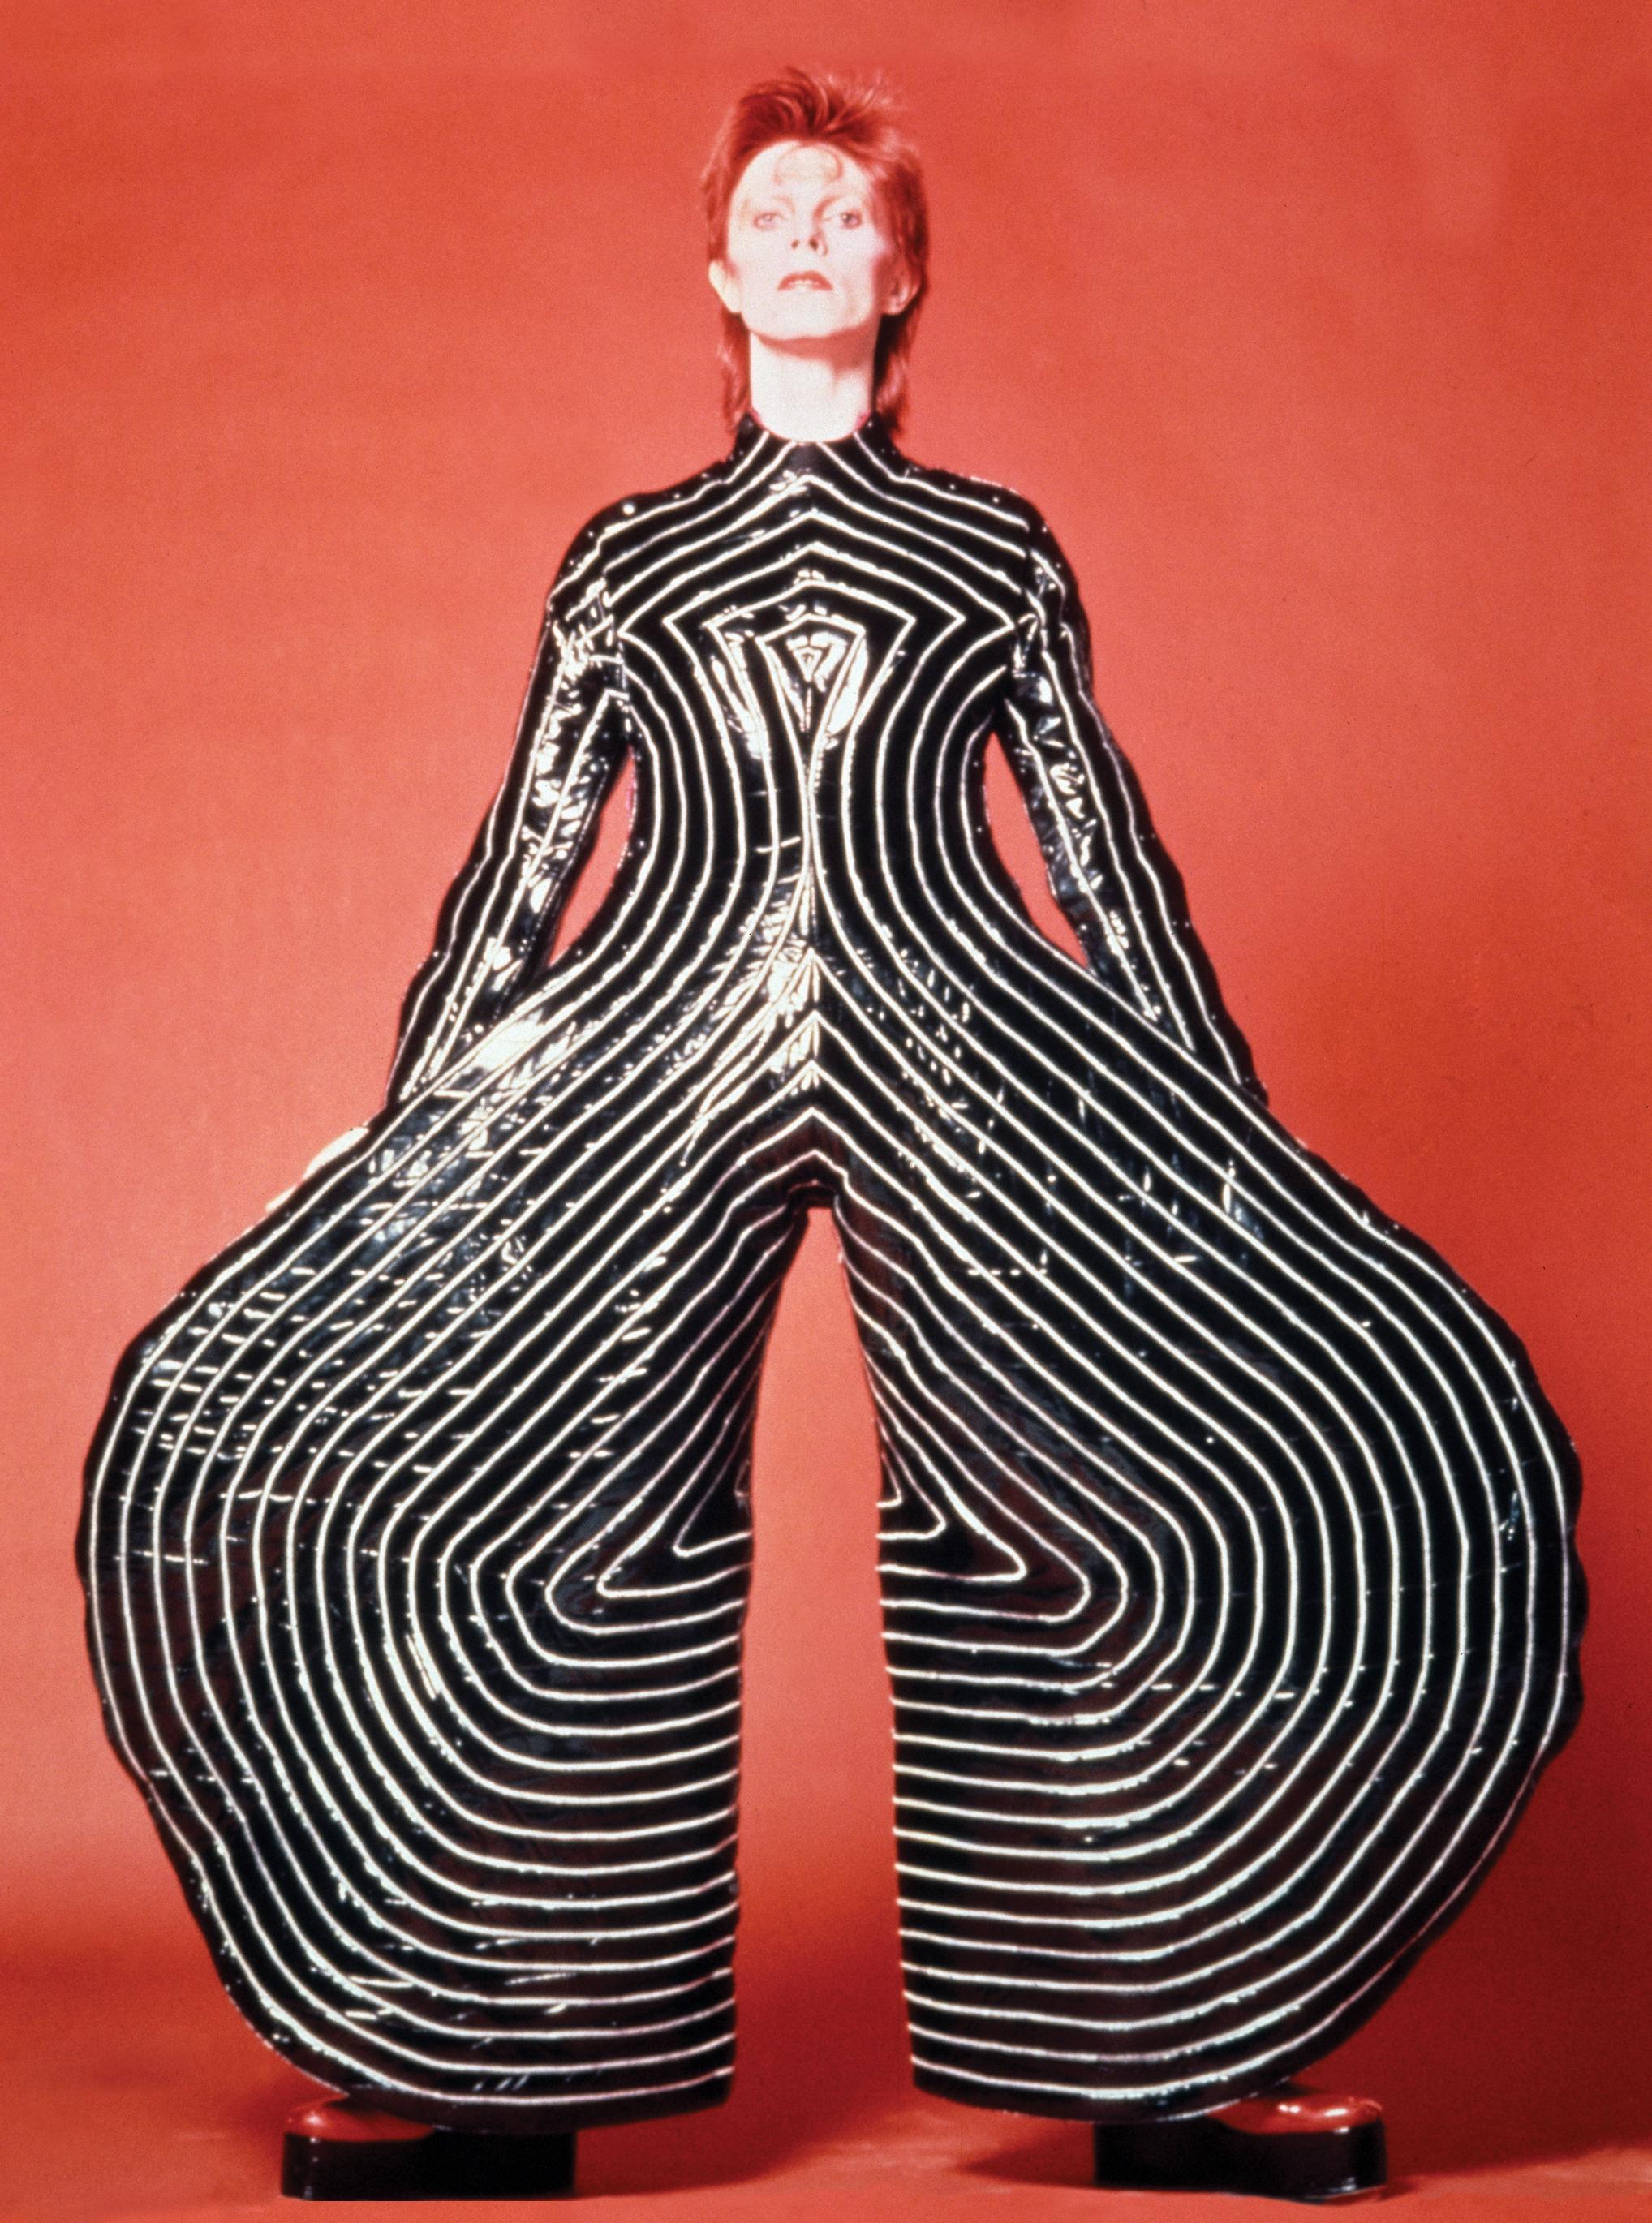 David Bowie im psychodelischen Anzug